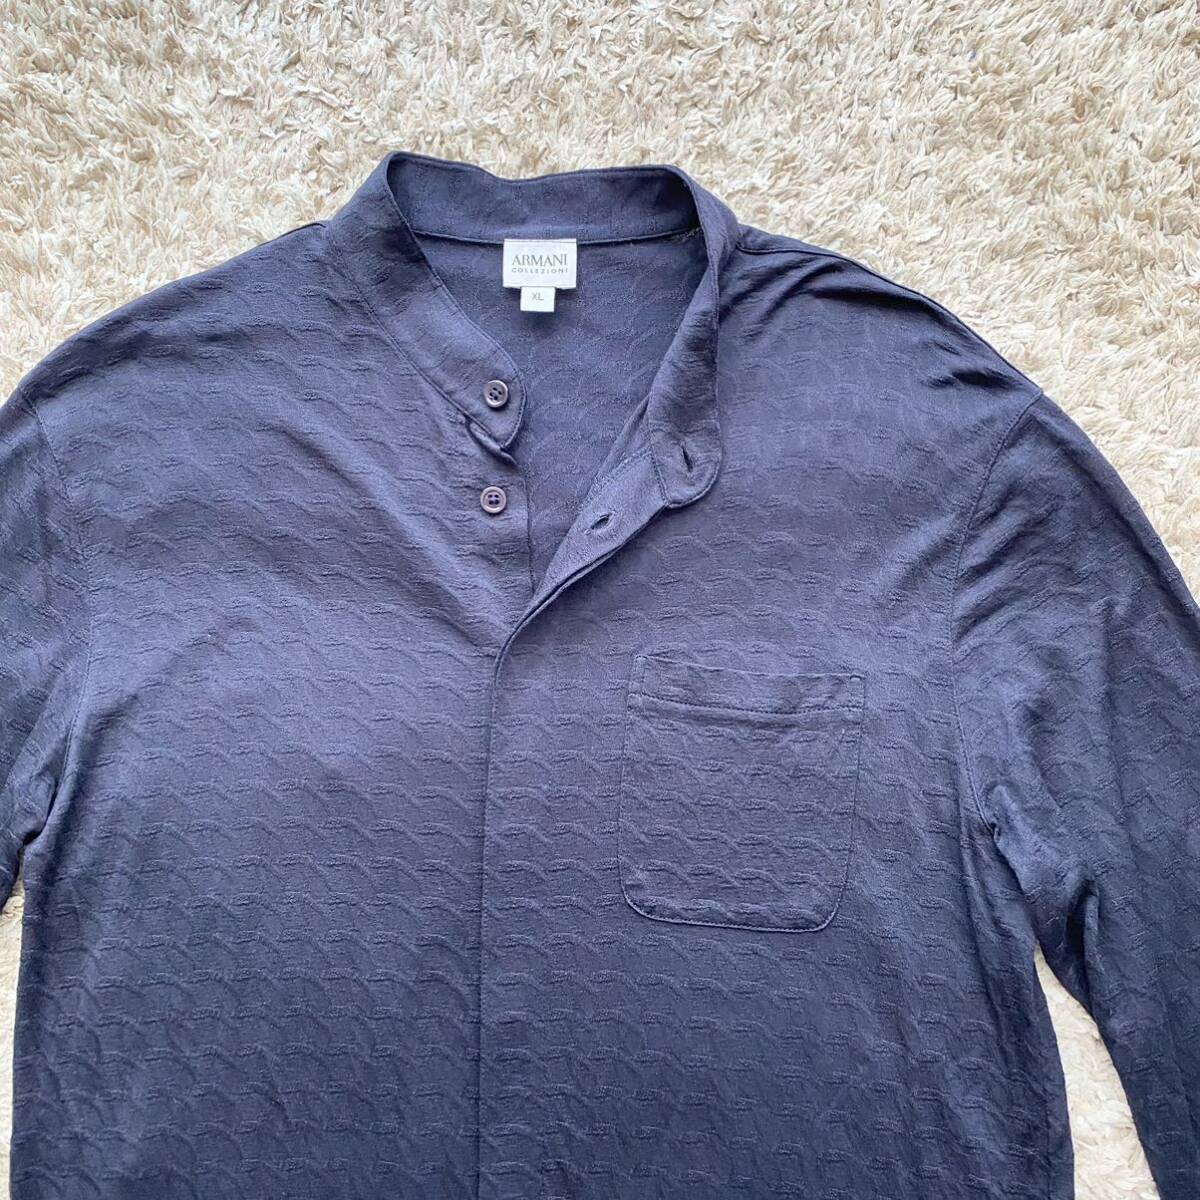  превосходный товар /XL размер /ARMANI COLLEZION Armani koretso-ni рубашка с длинным рукавом шелк жакет блузон темно-синий неровность рисунок мужской весна лето тонкий 